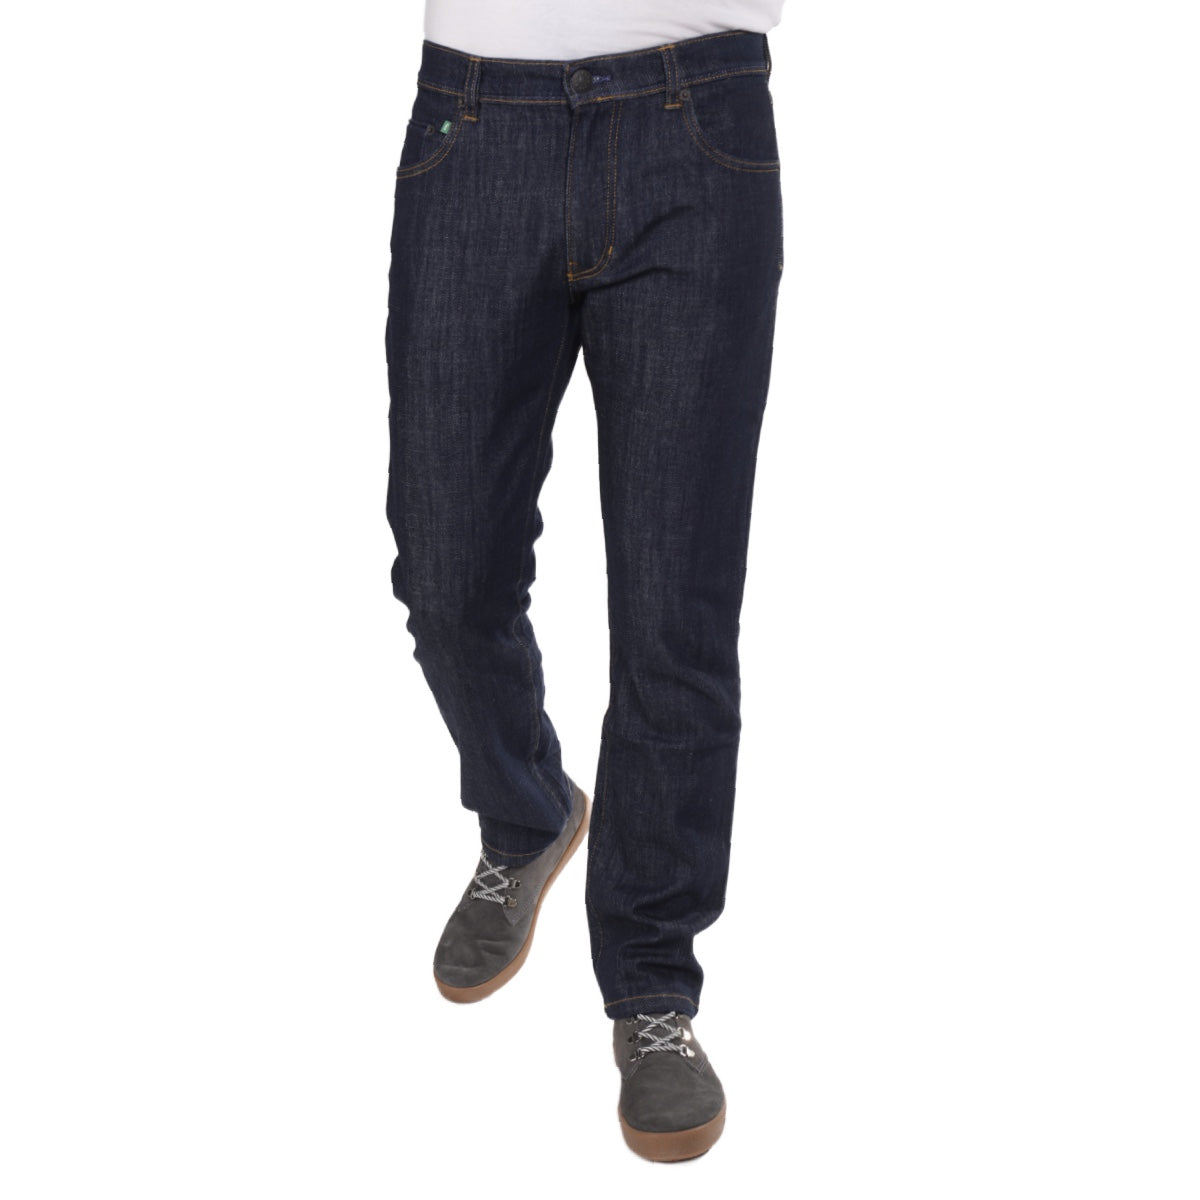 Ein Produktfoto von Fairjeans, einem Hersteller von nachhaltigen Jeans aus Bio-Baumwolle. Das Bild zeigt eine gerade Herrenjeans in Regular Fit und betont die Nachhaltigkeit und ethische Produktion des Herstellers.